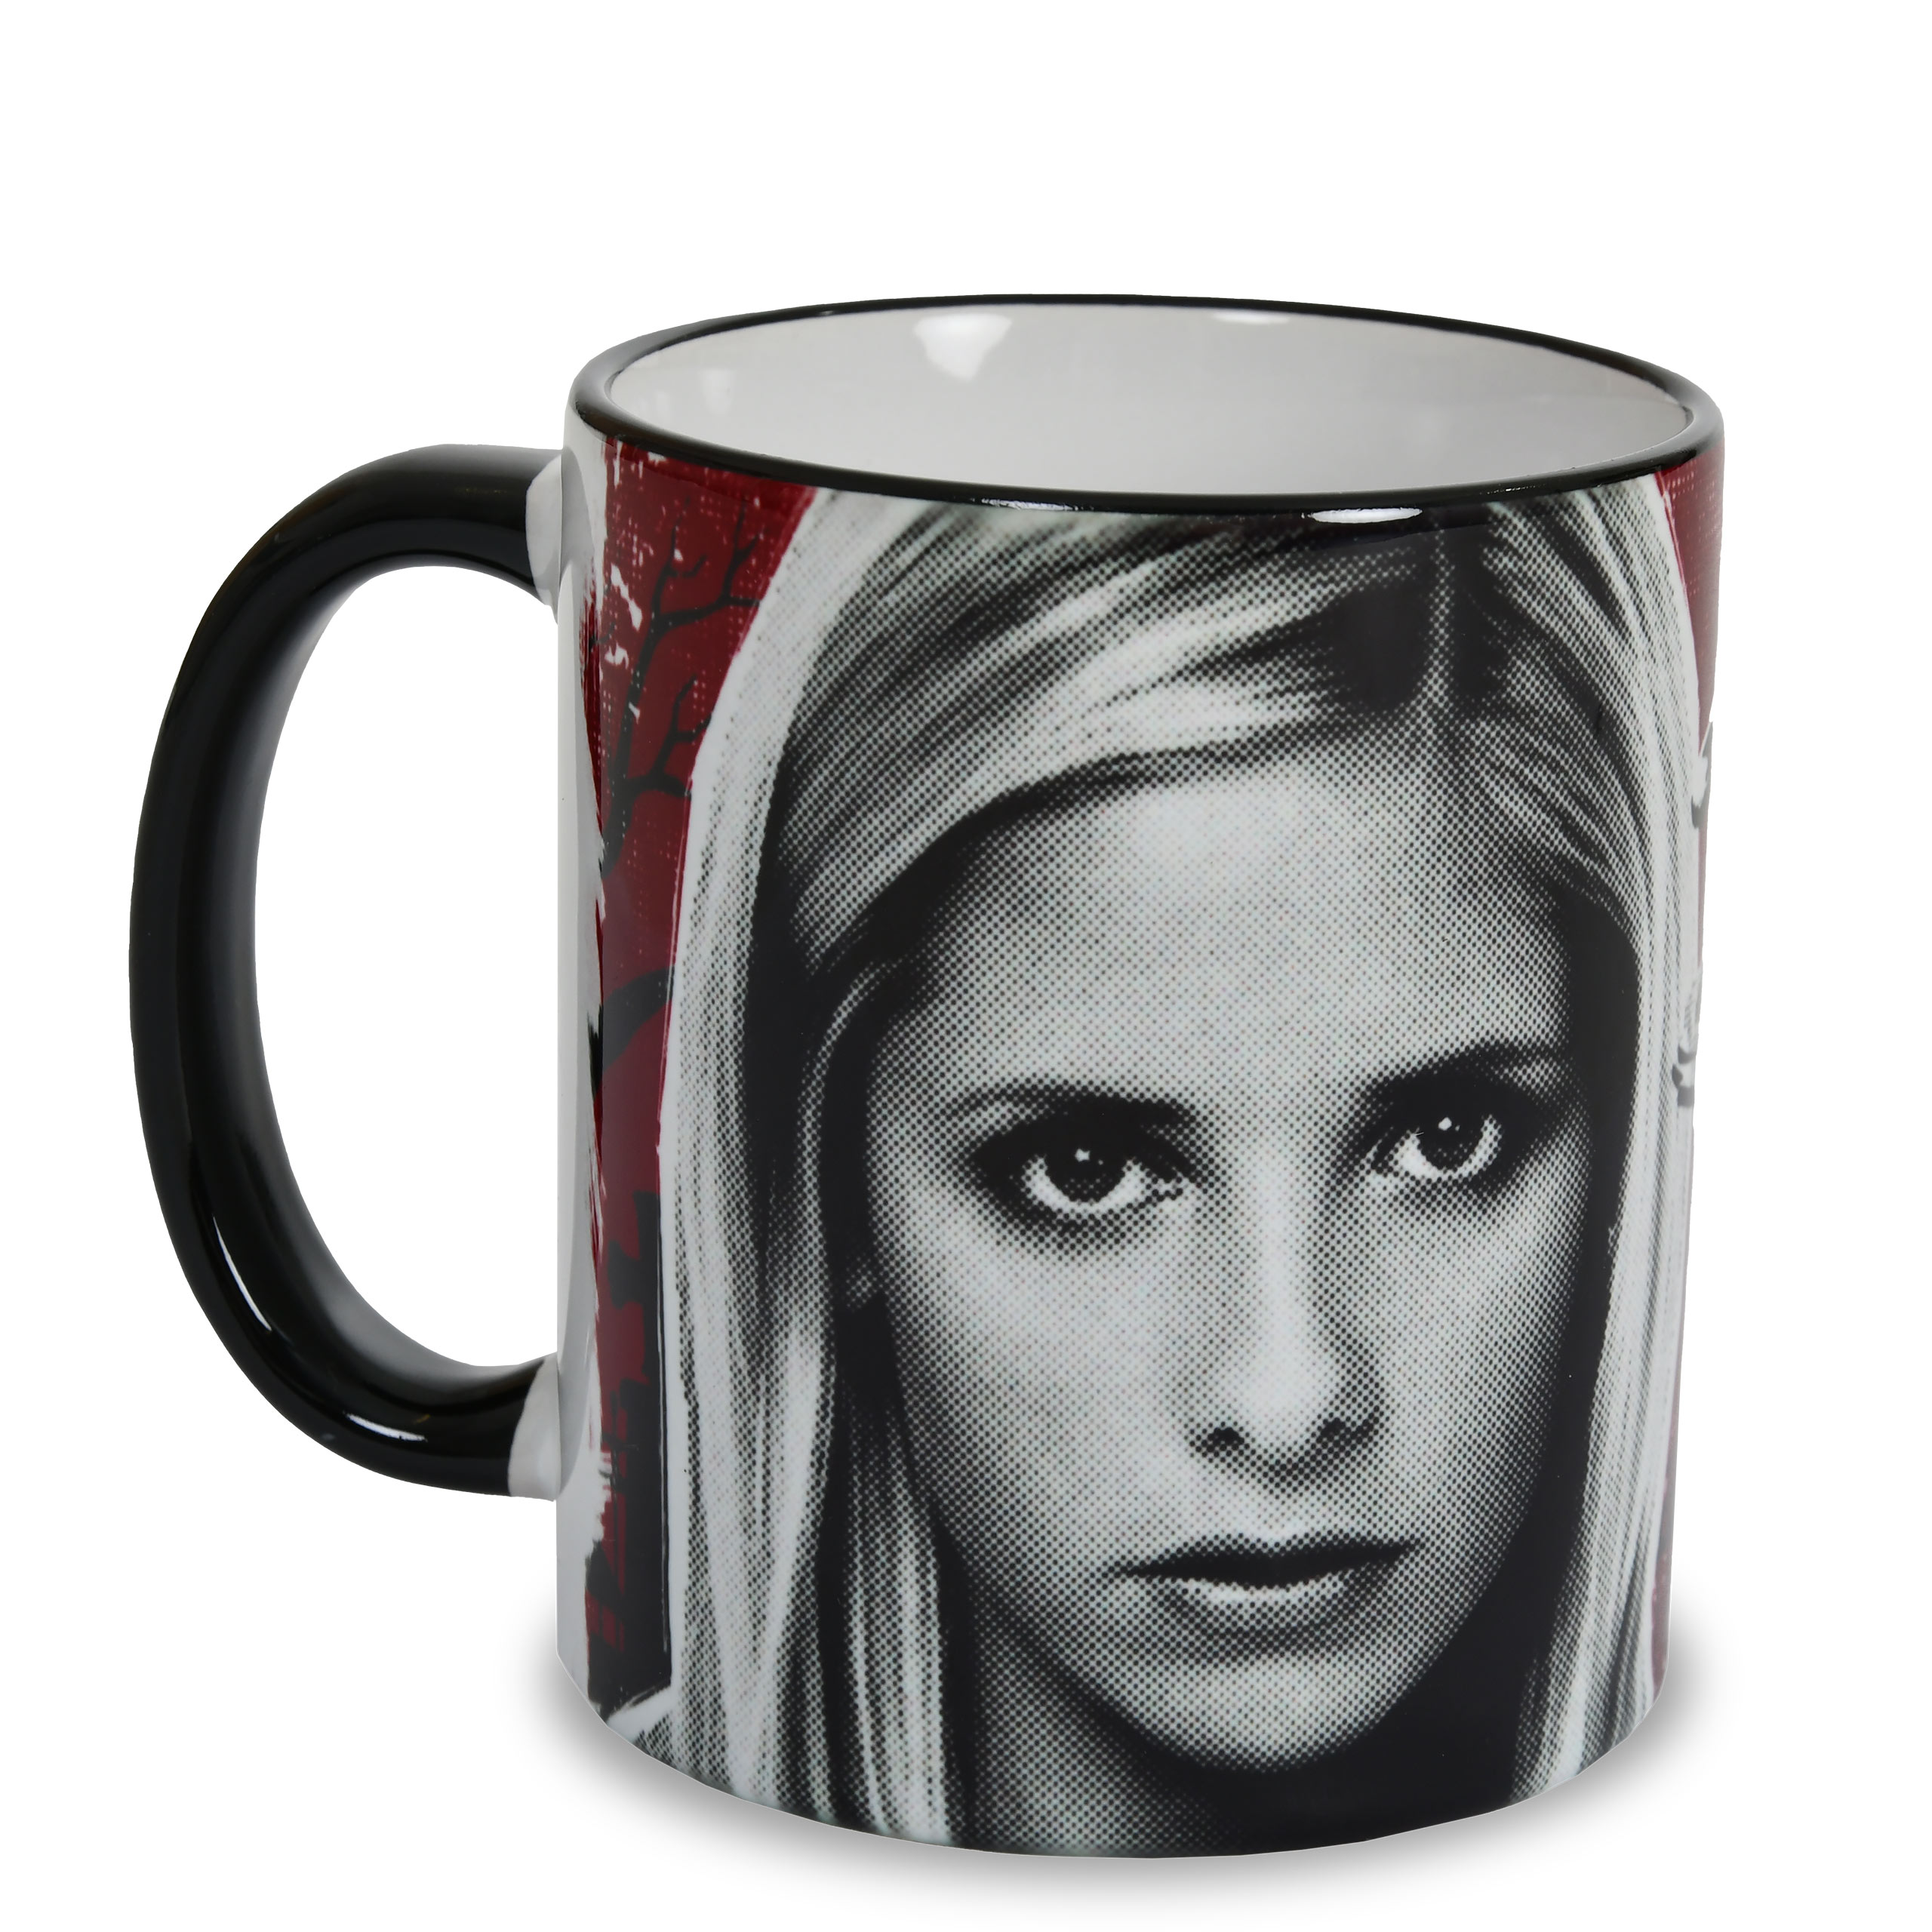 Vampire slayer mug for Buffy fans